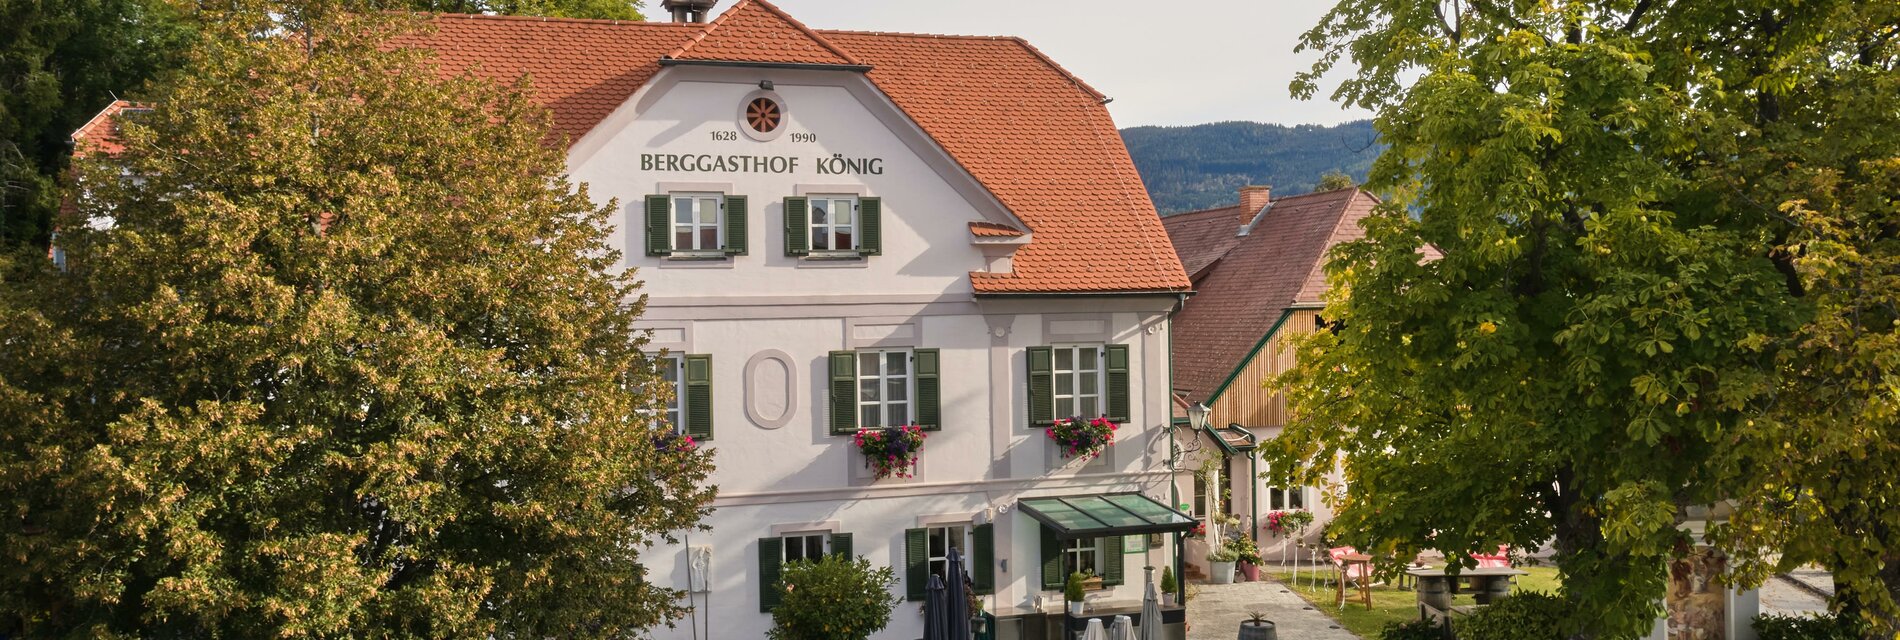 Berggasthof König_Aussenansicht neu_Oststeiermark